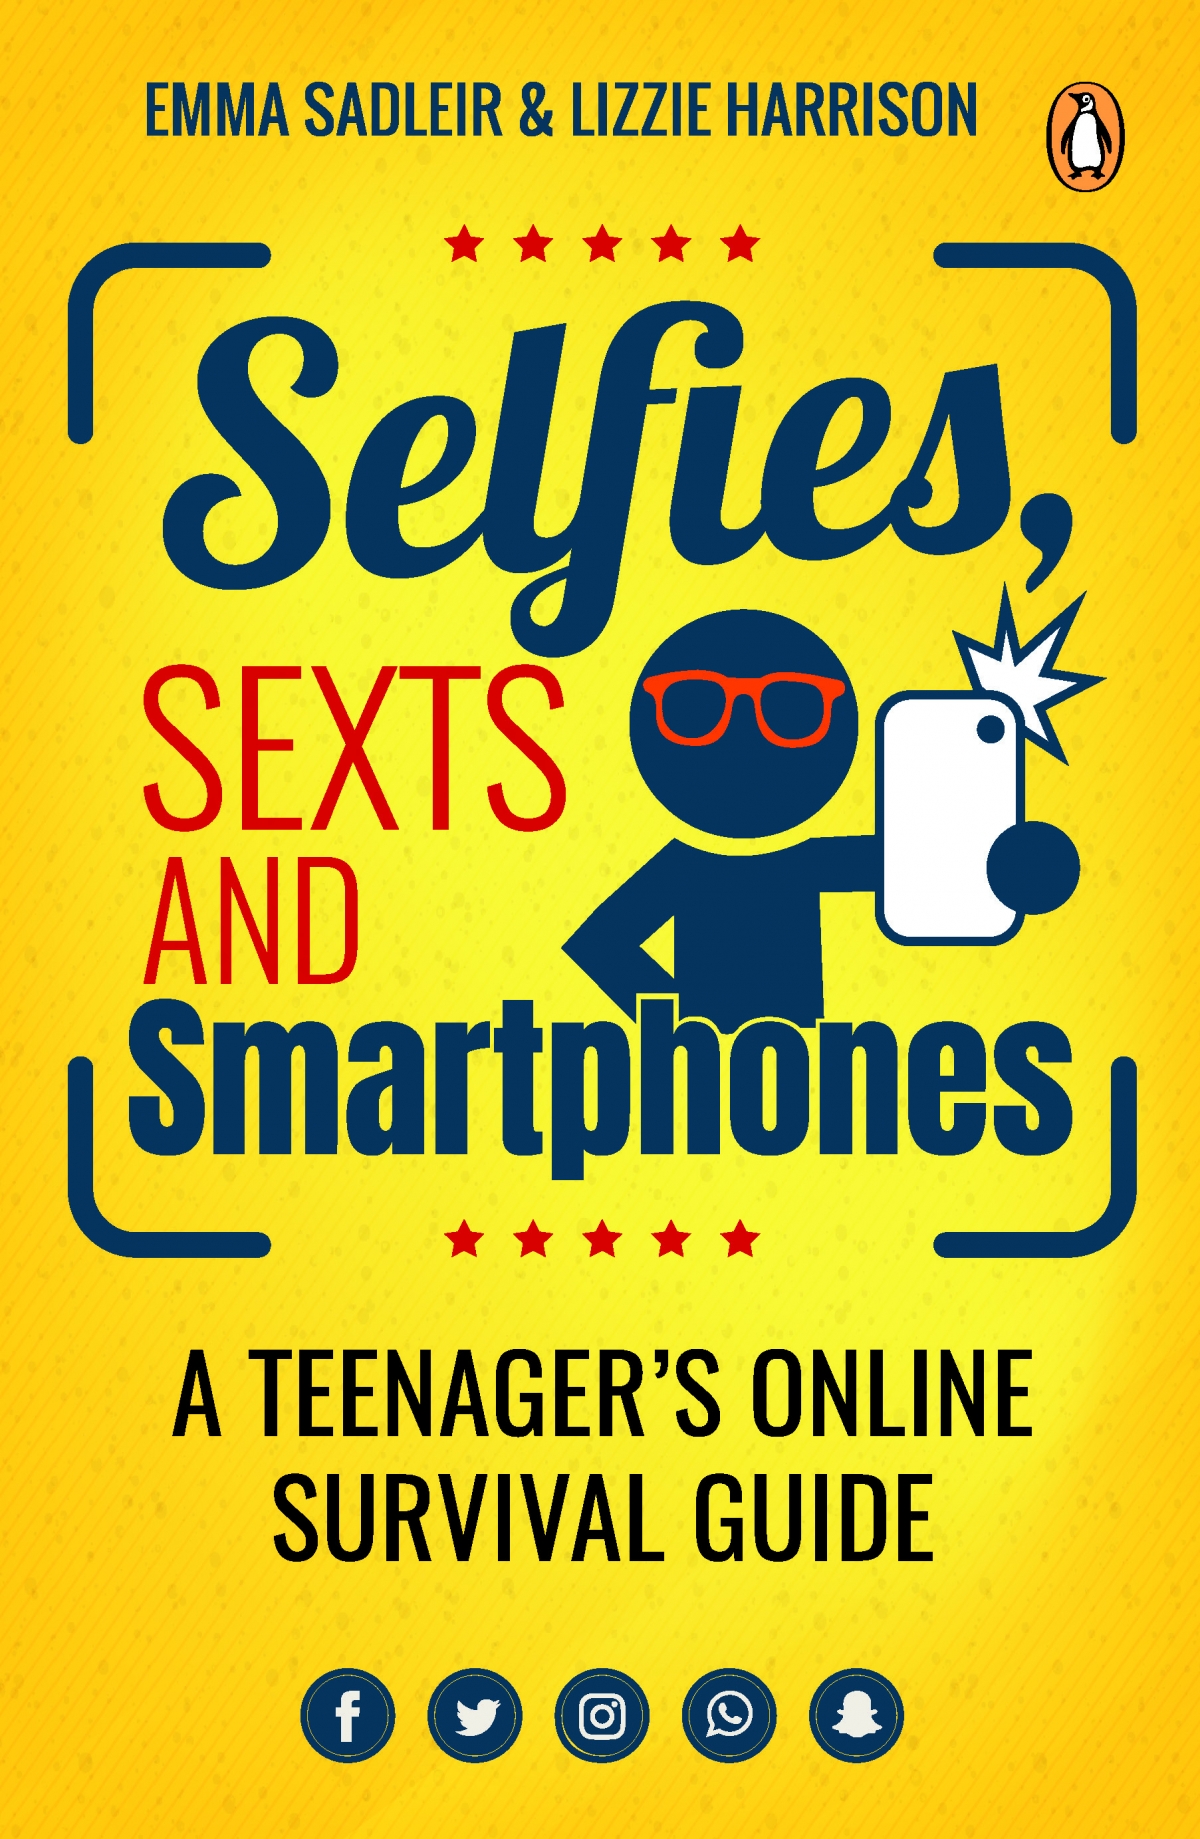 Selfies, Sexts and Smartphones